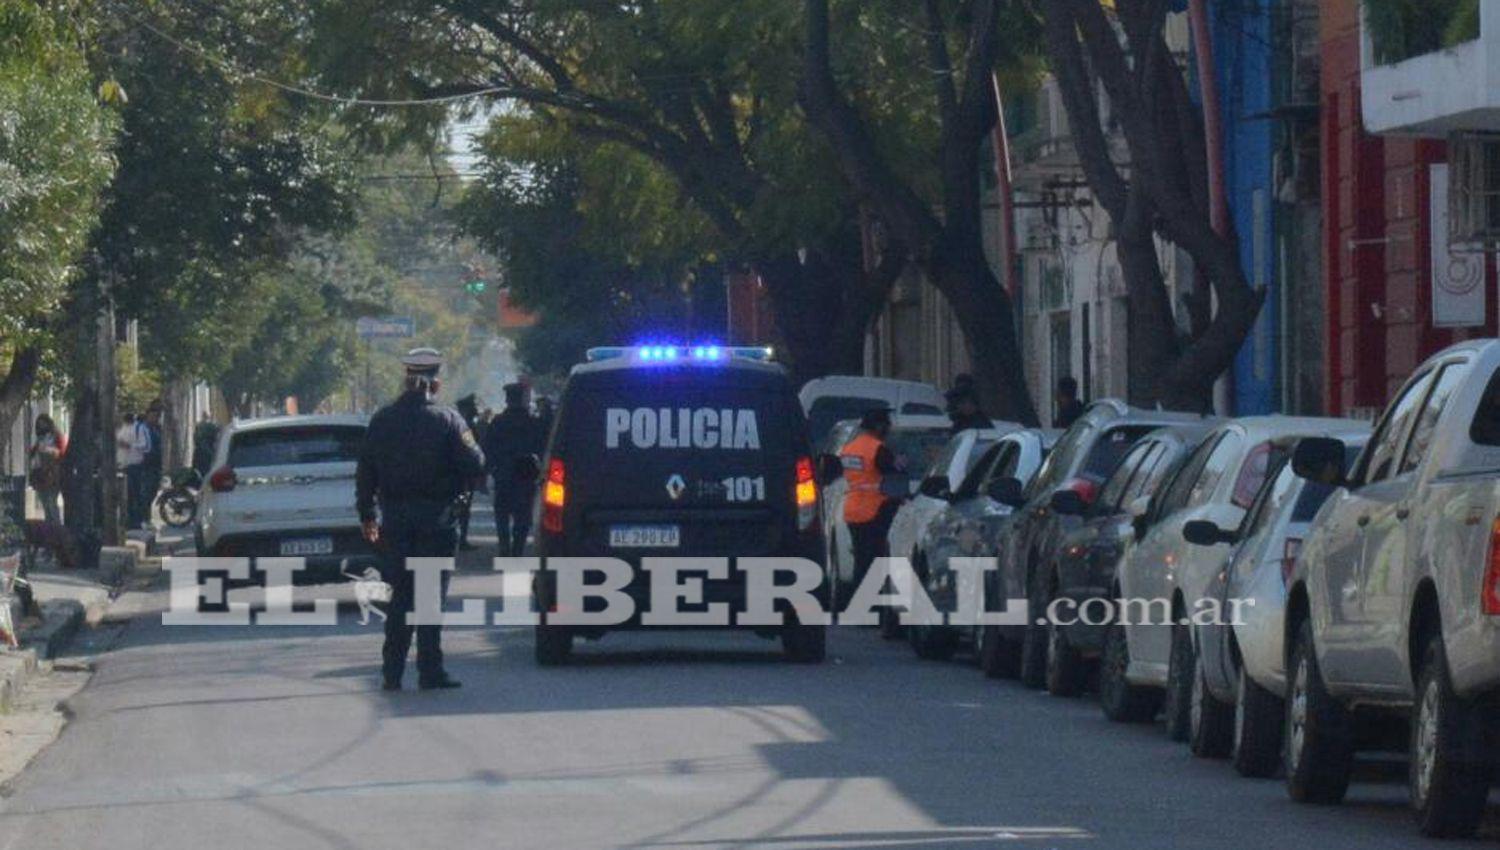 La policiacutea activoacute el protocolo sanitario en pleno Centro de la Capital de Santiago del Estero